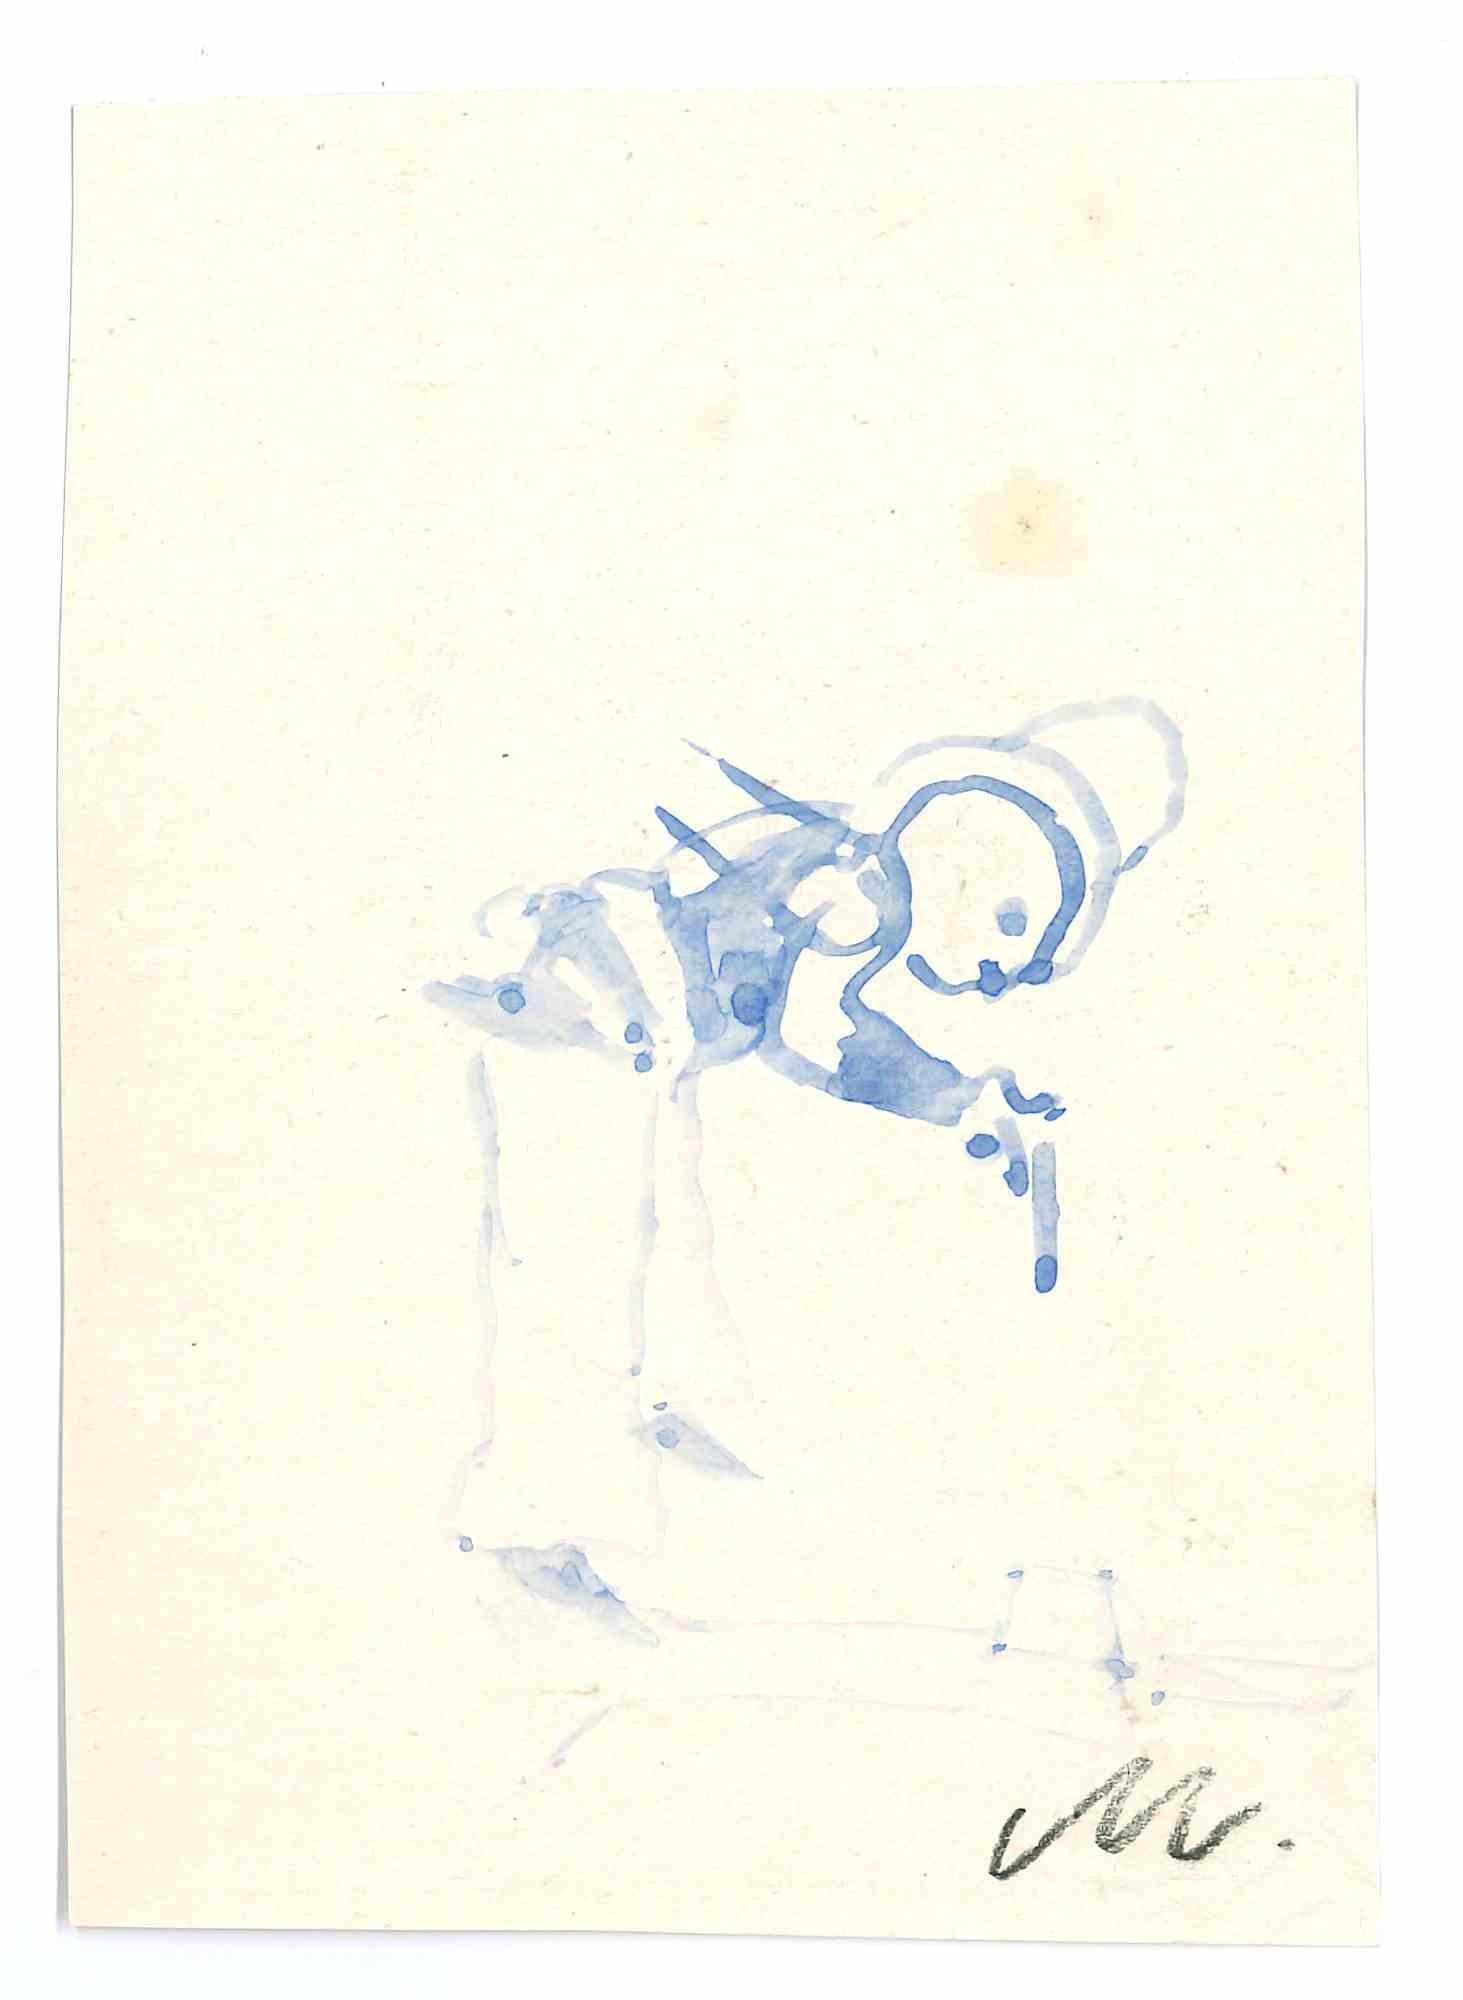 Der Shoot ist eine Aquarellzeichnung von Mino Maccari  (1924-1989) in den 1960er Jahren.

Monogramme am unteren Rand.

Gute Bedingungen.

Mino Maccari (Siena, 1924-Rom, 16. Juni 1989) war ein italienischer Schriftsteller, Maler, Graveur und